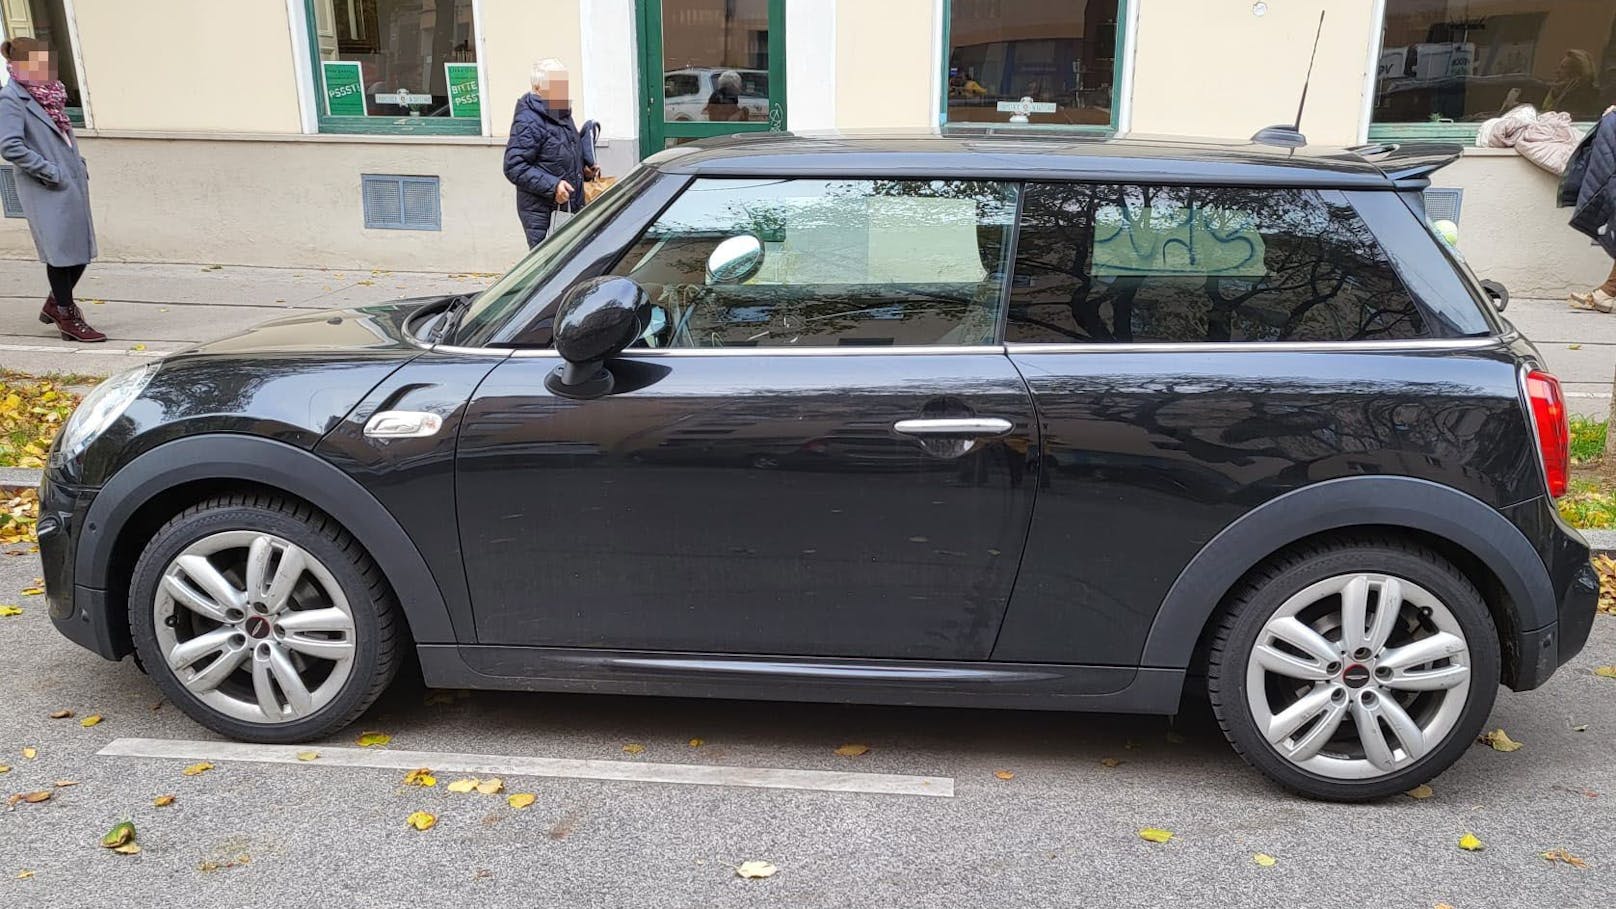 Wiener geht Reifen wechseln, kassiert 600 Euro Rechnung